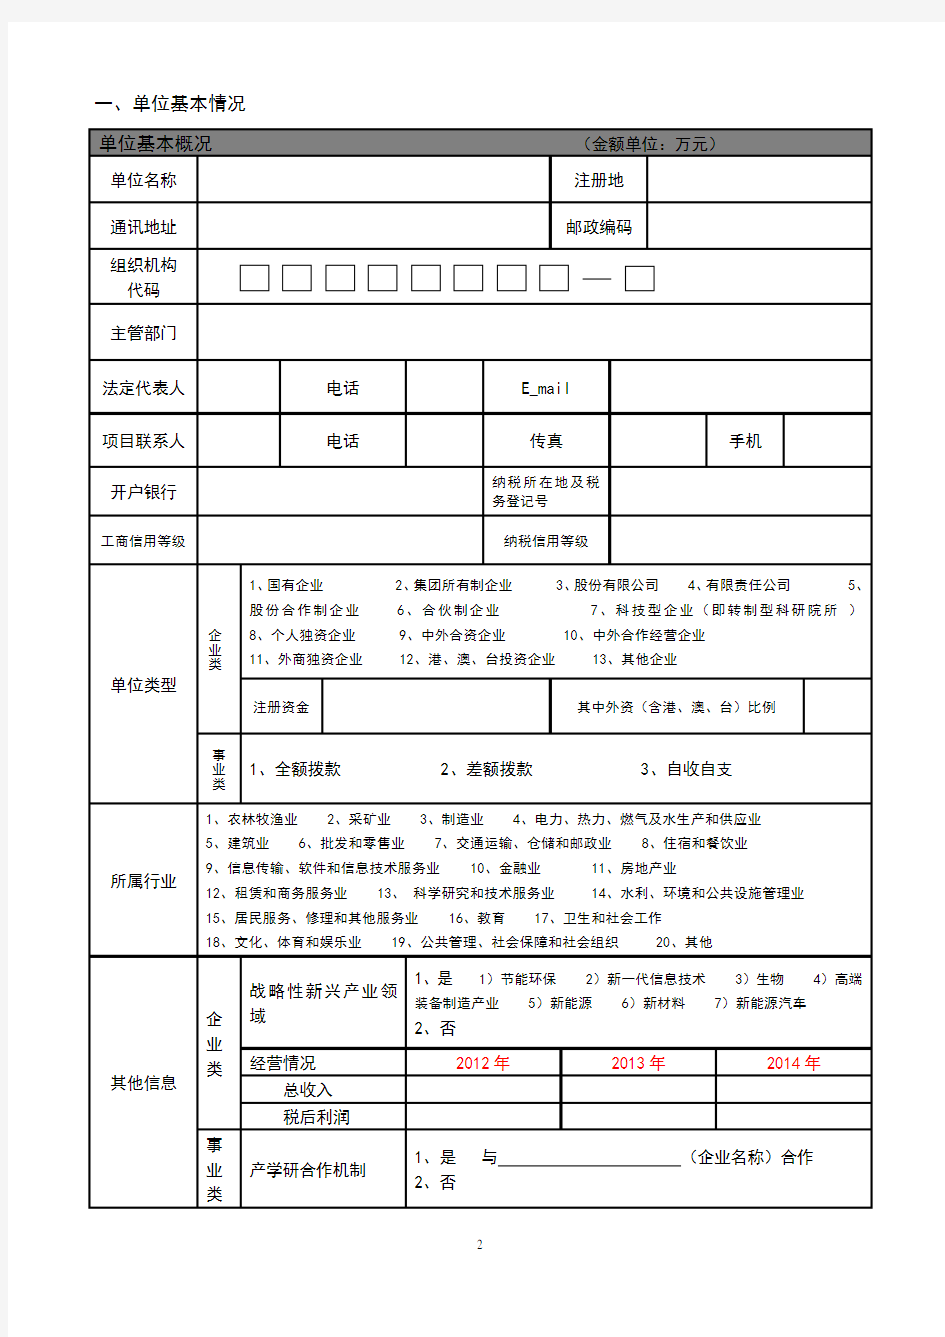 《上海市专利工作试点示范单位申报表》 - 副本